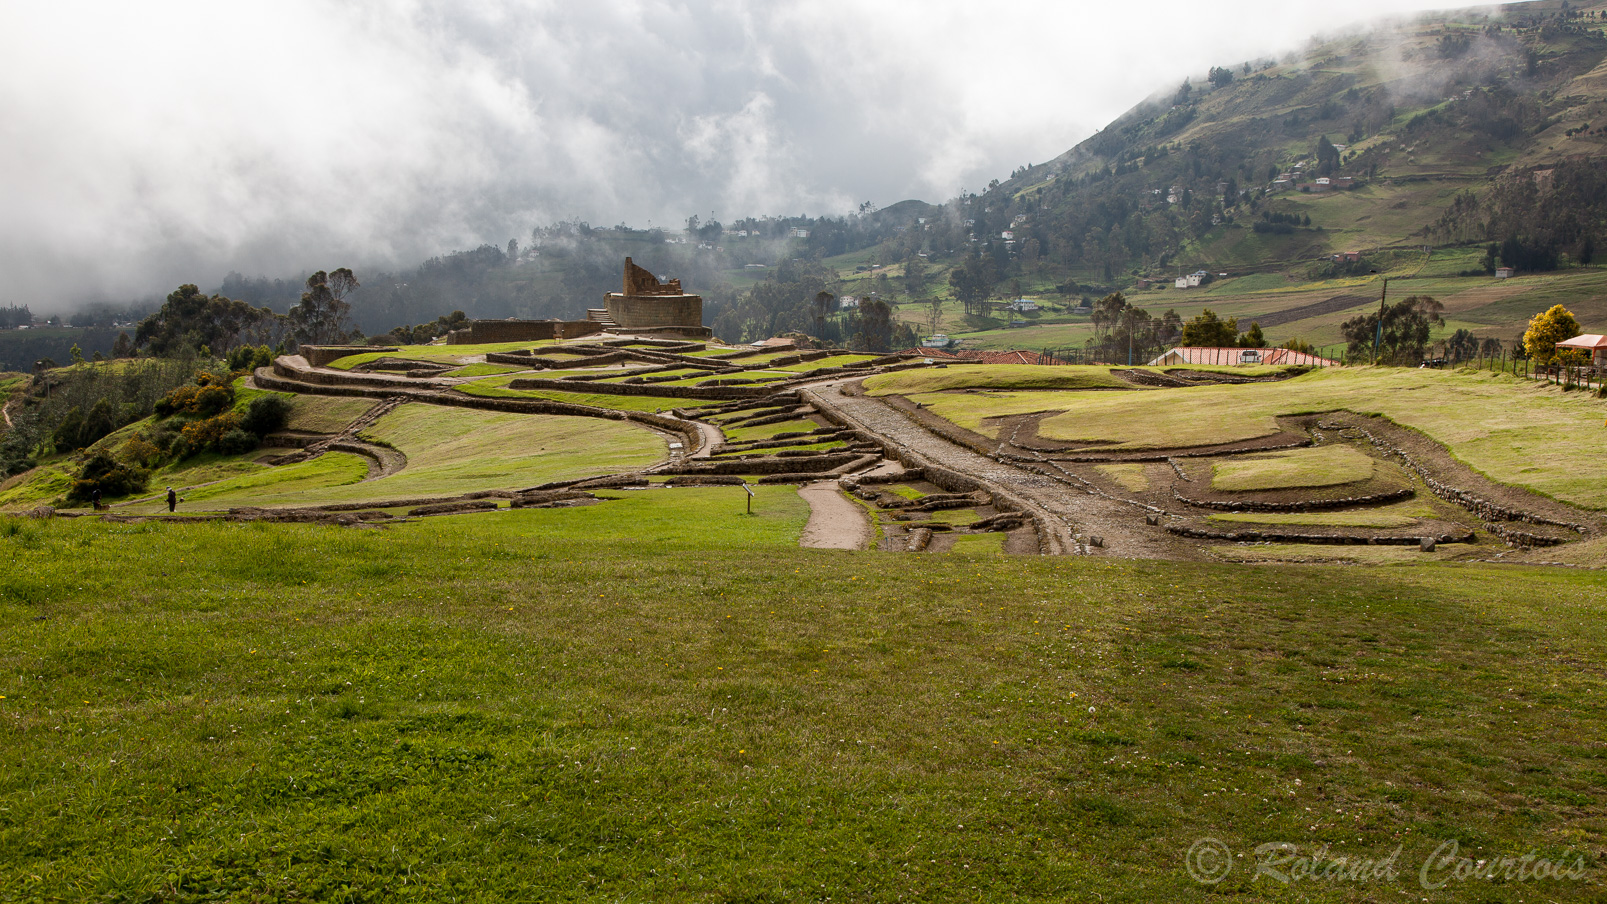 Le site archéologique d'Ingapirca est situé à 3.200 m d'altitude.